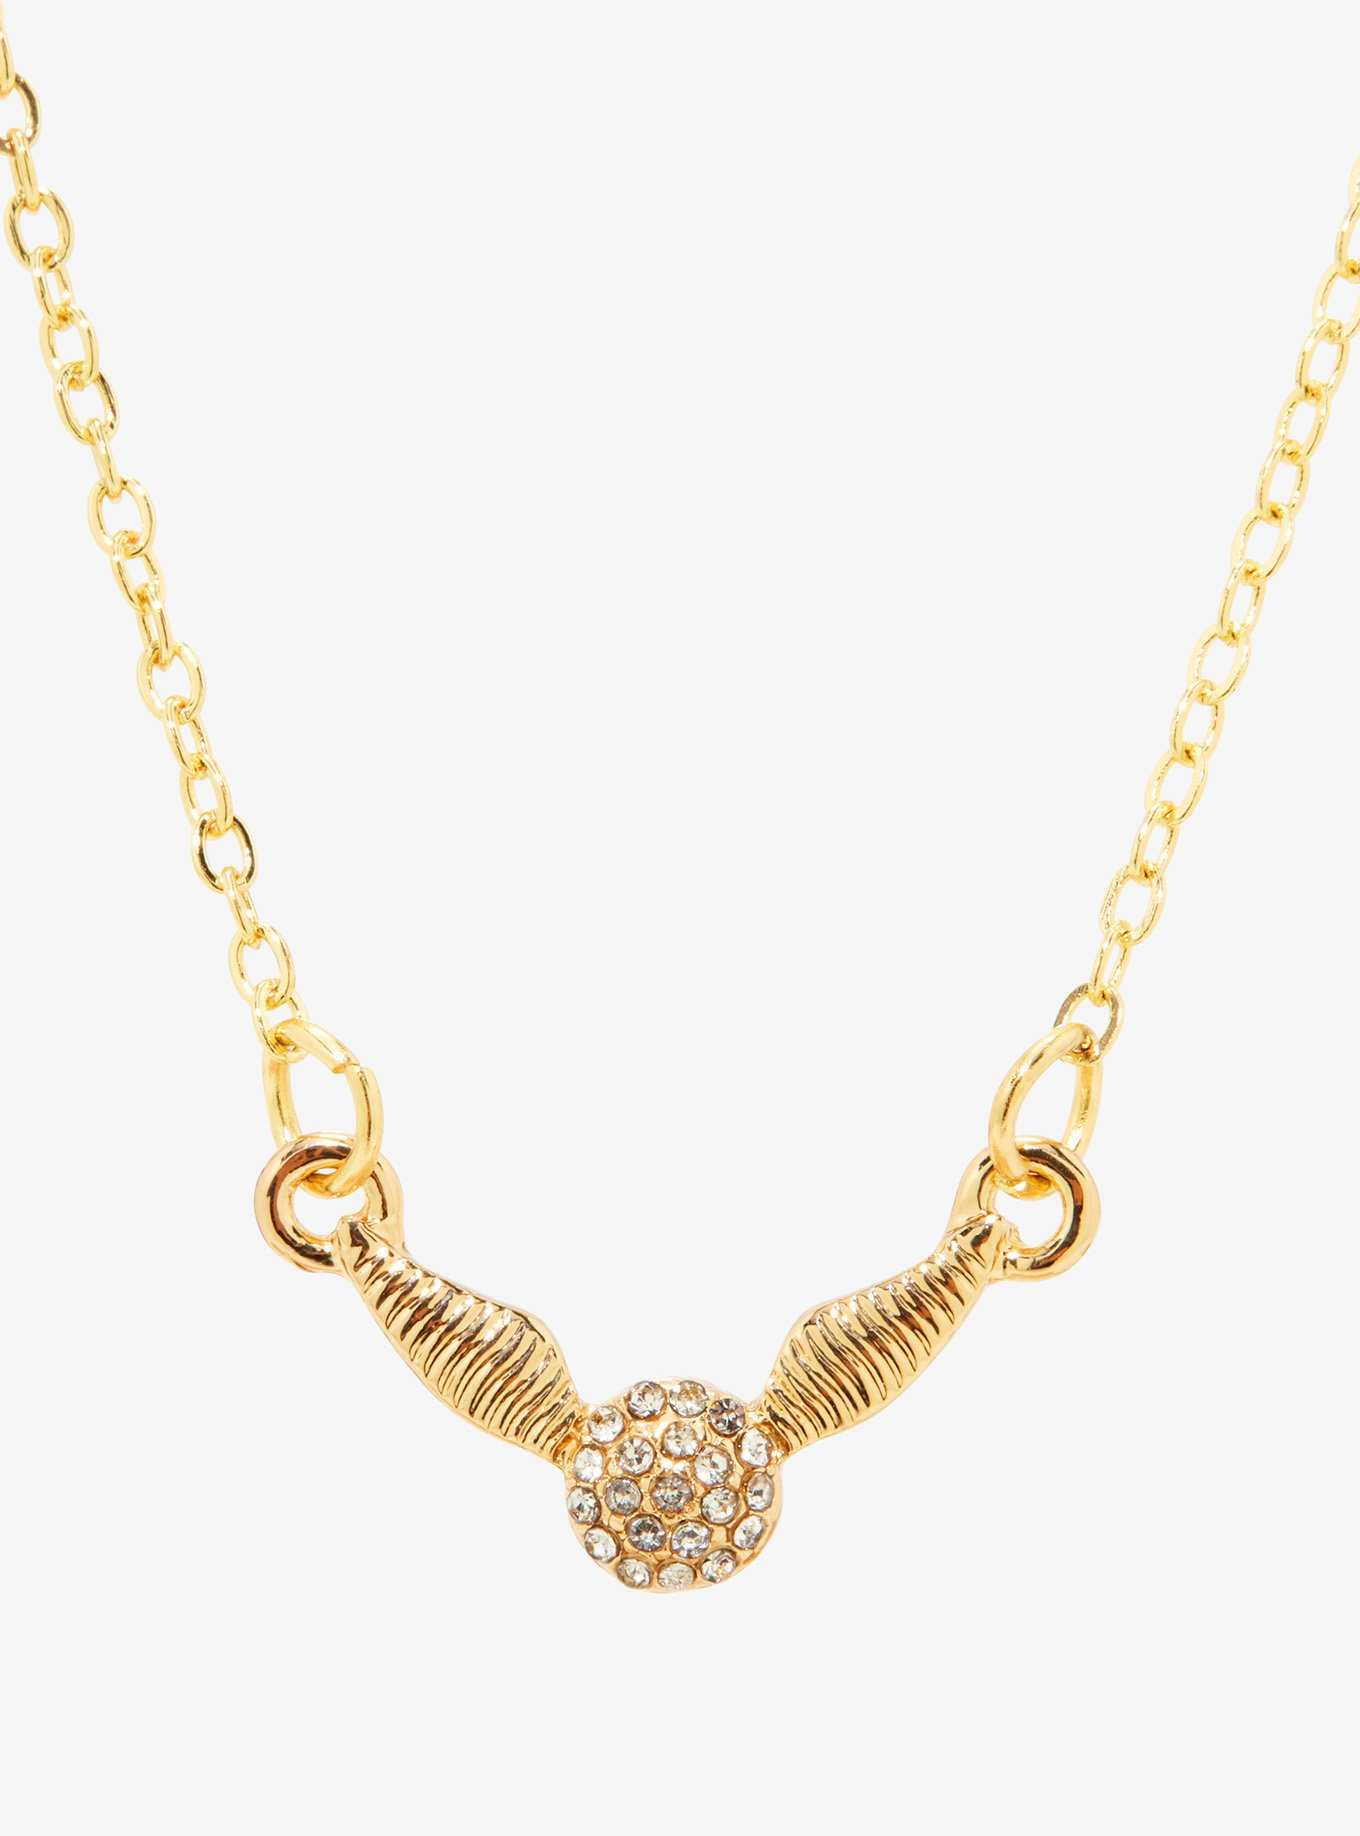 Harry Potter Golden Snitch Bejeweled Necklace, , hi-res